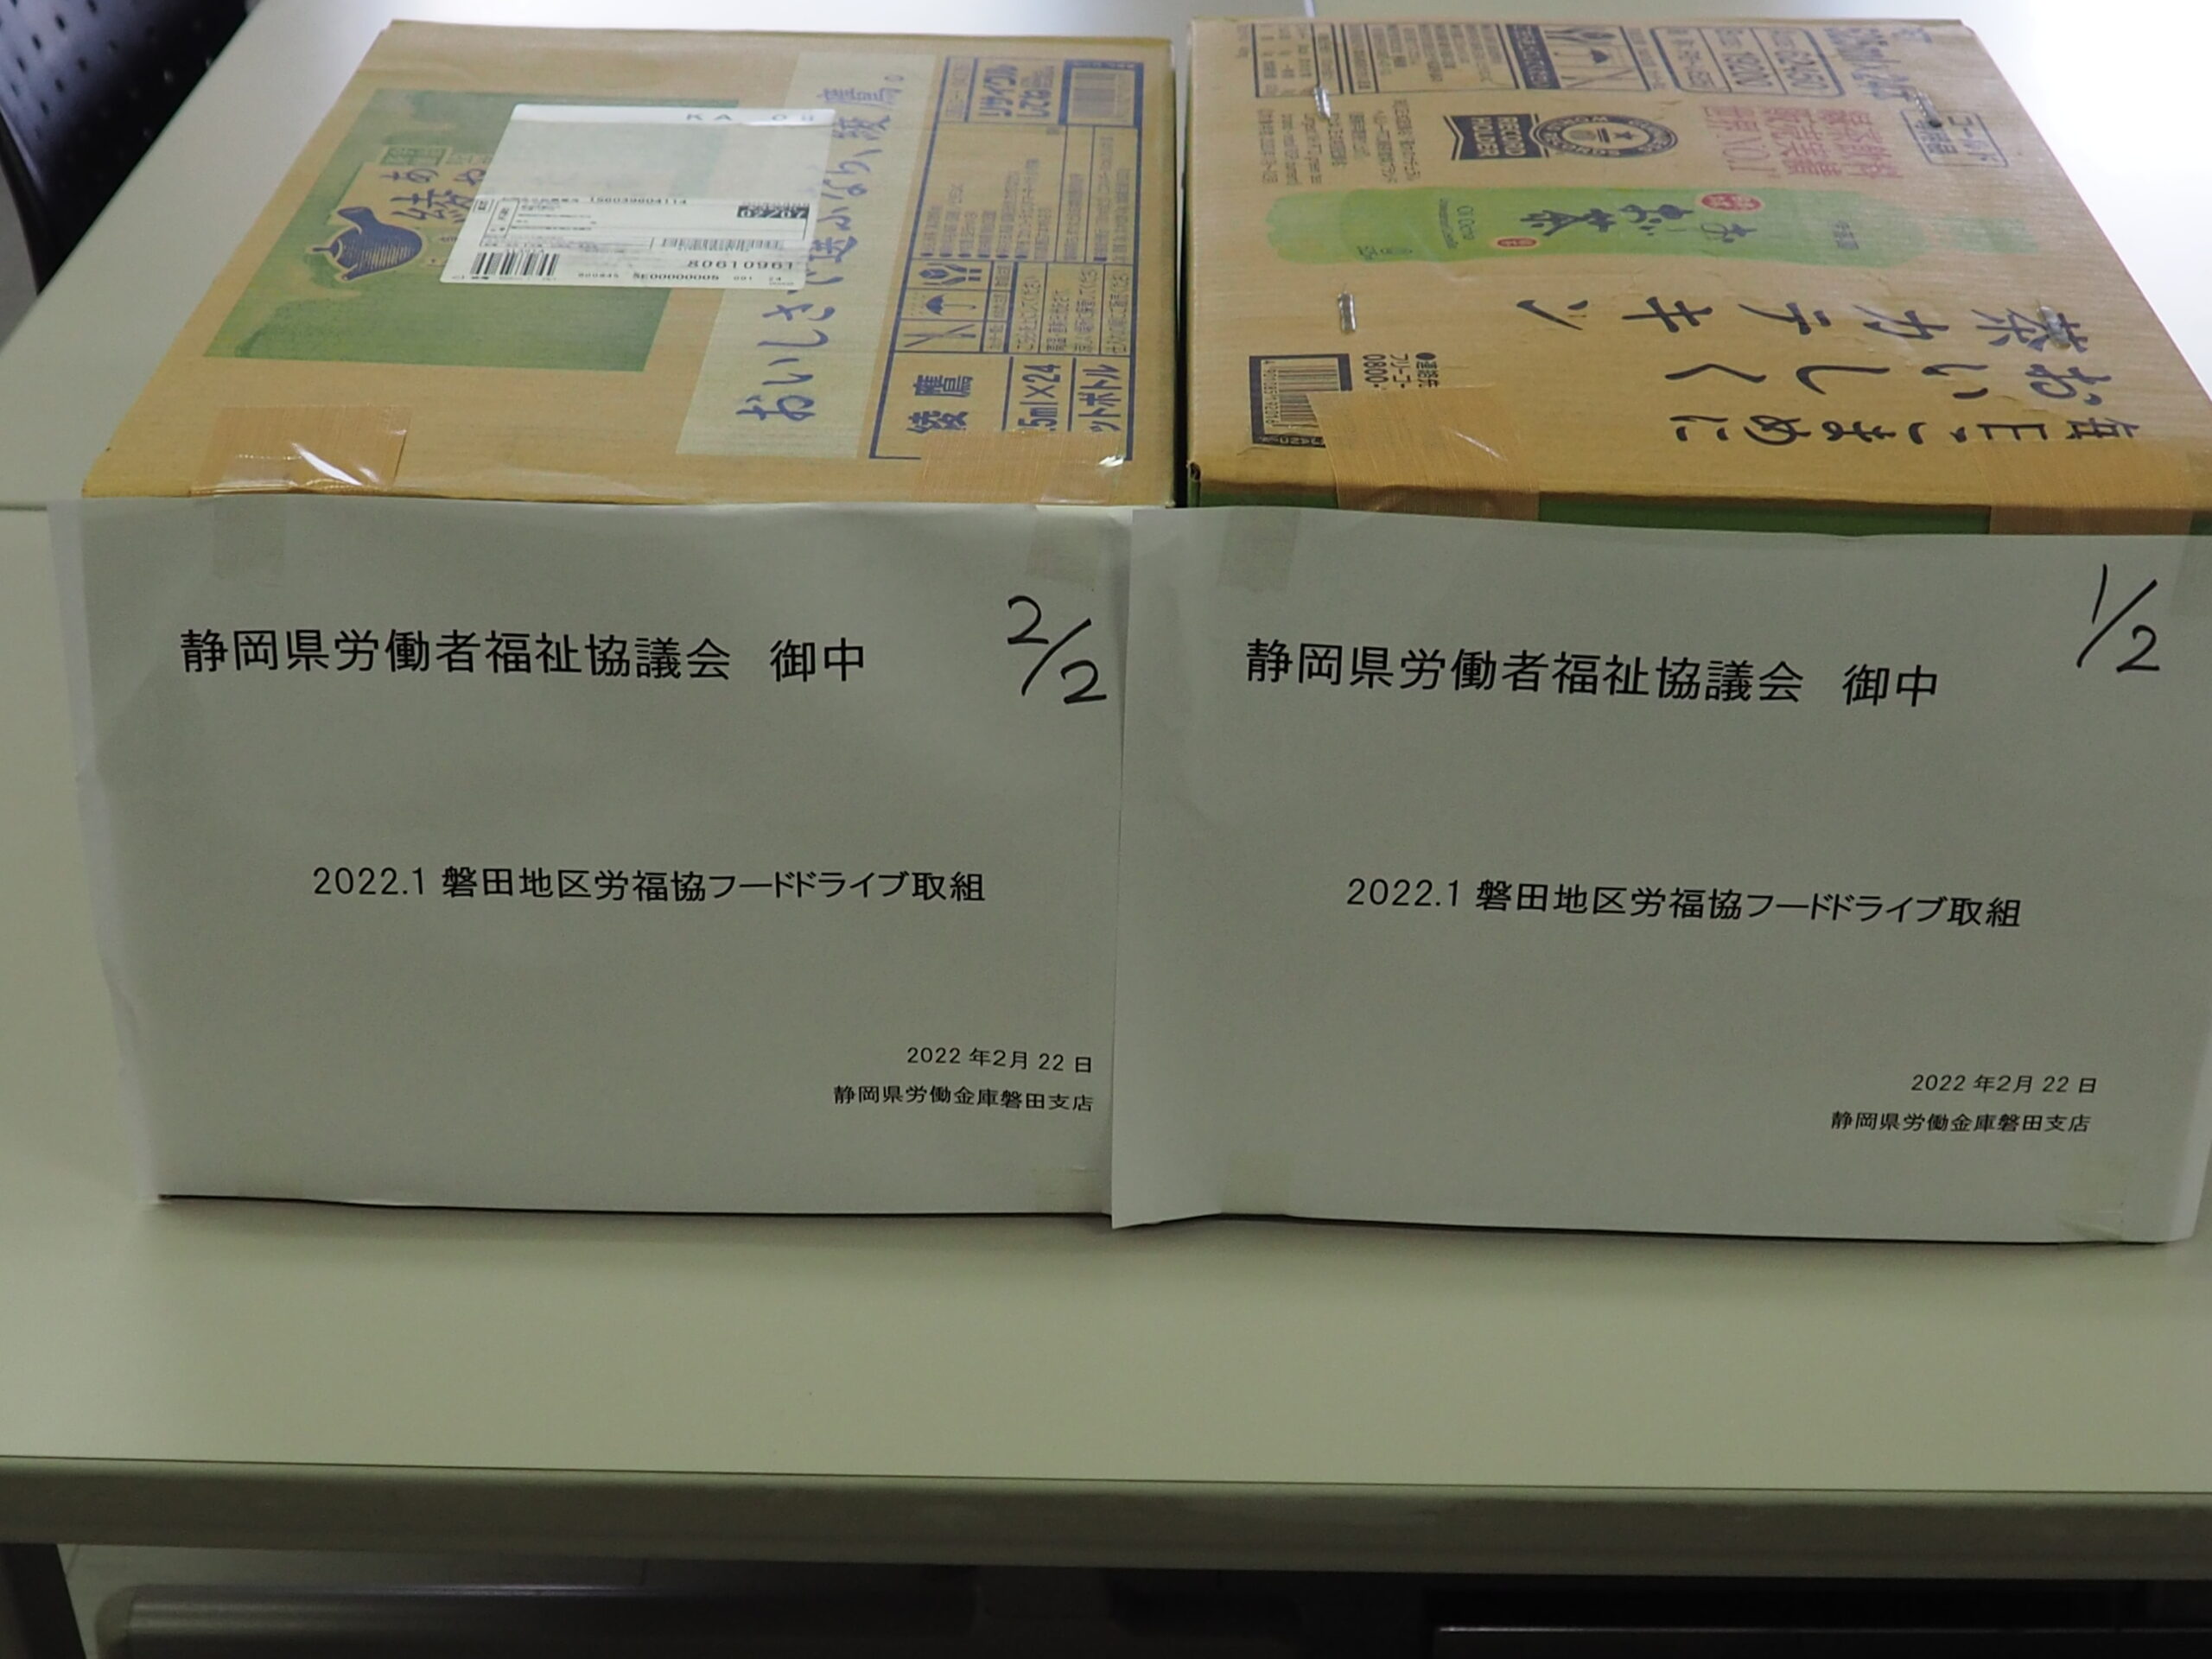 磐田地区労福協と静岡地区労福協から食品をいただきました。